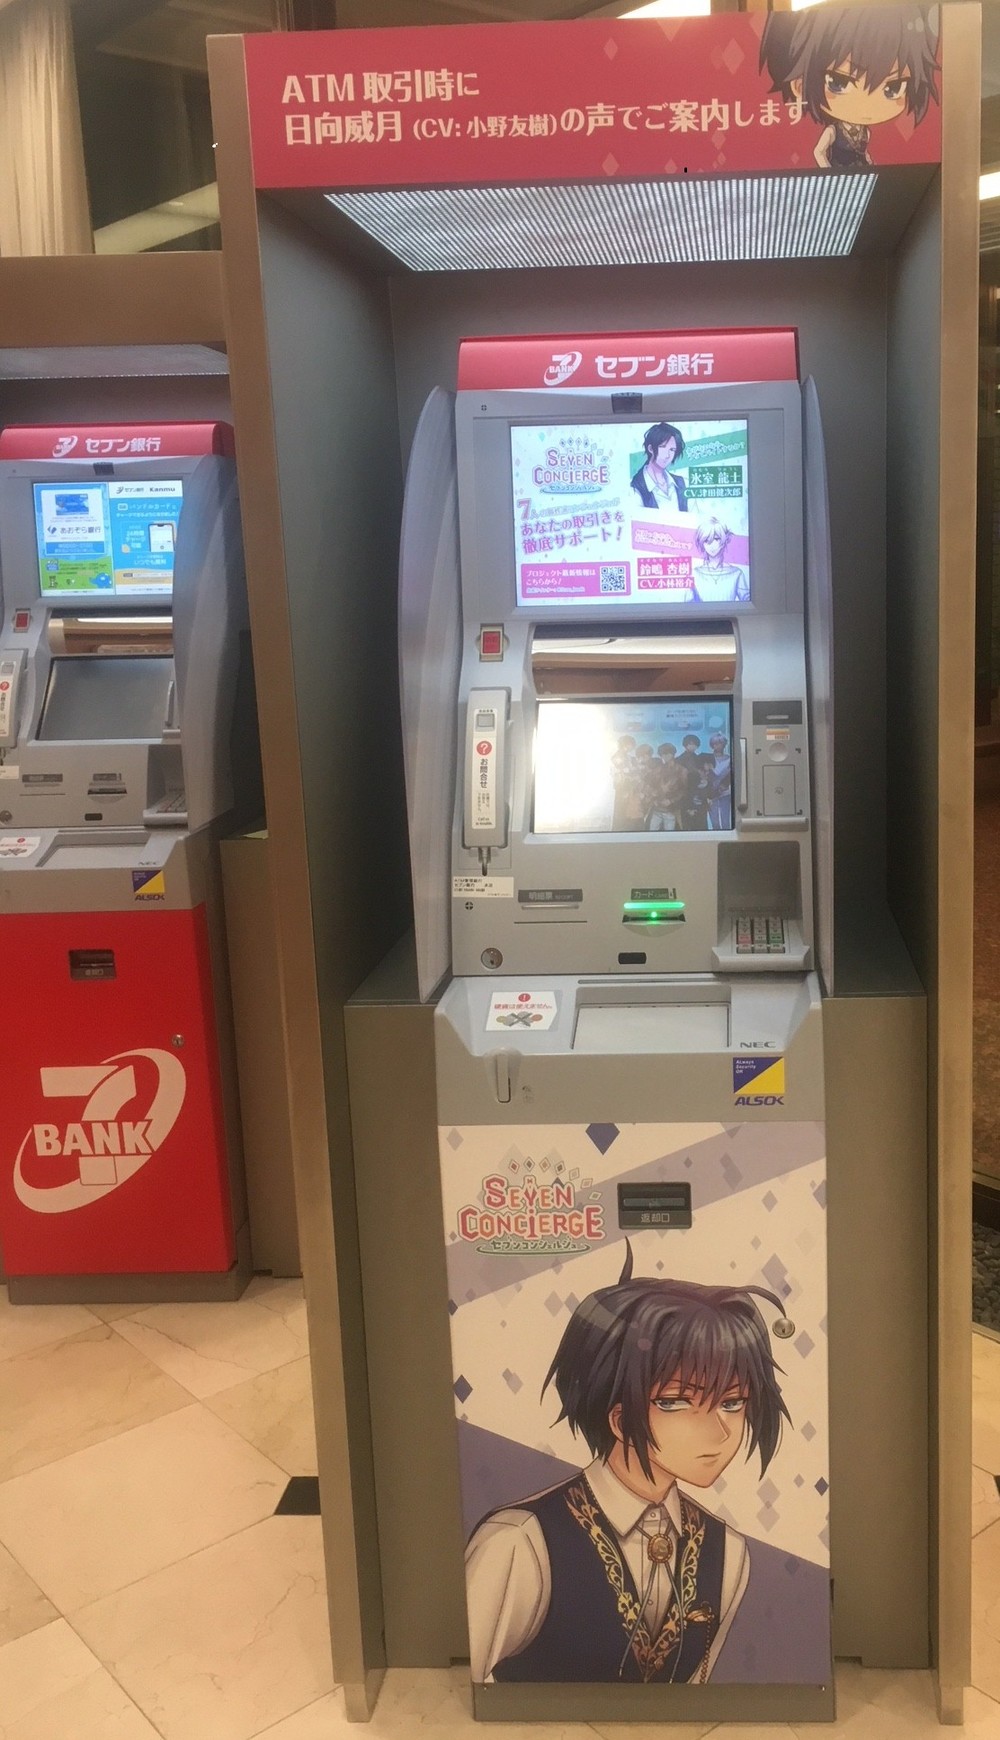 セブン銀行ATM「何しに来たんだよ」、画面のイケメンキャラが操作案内　ネットで賛否